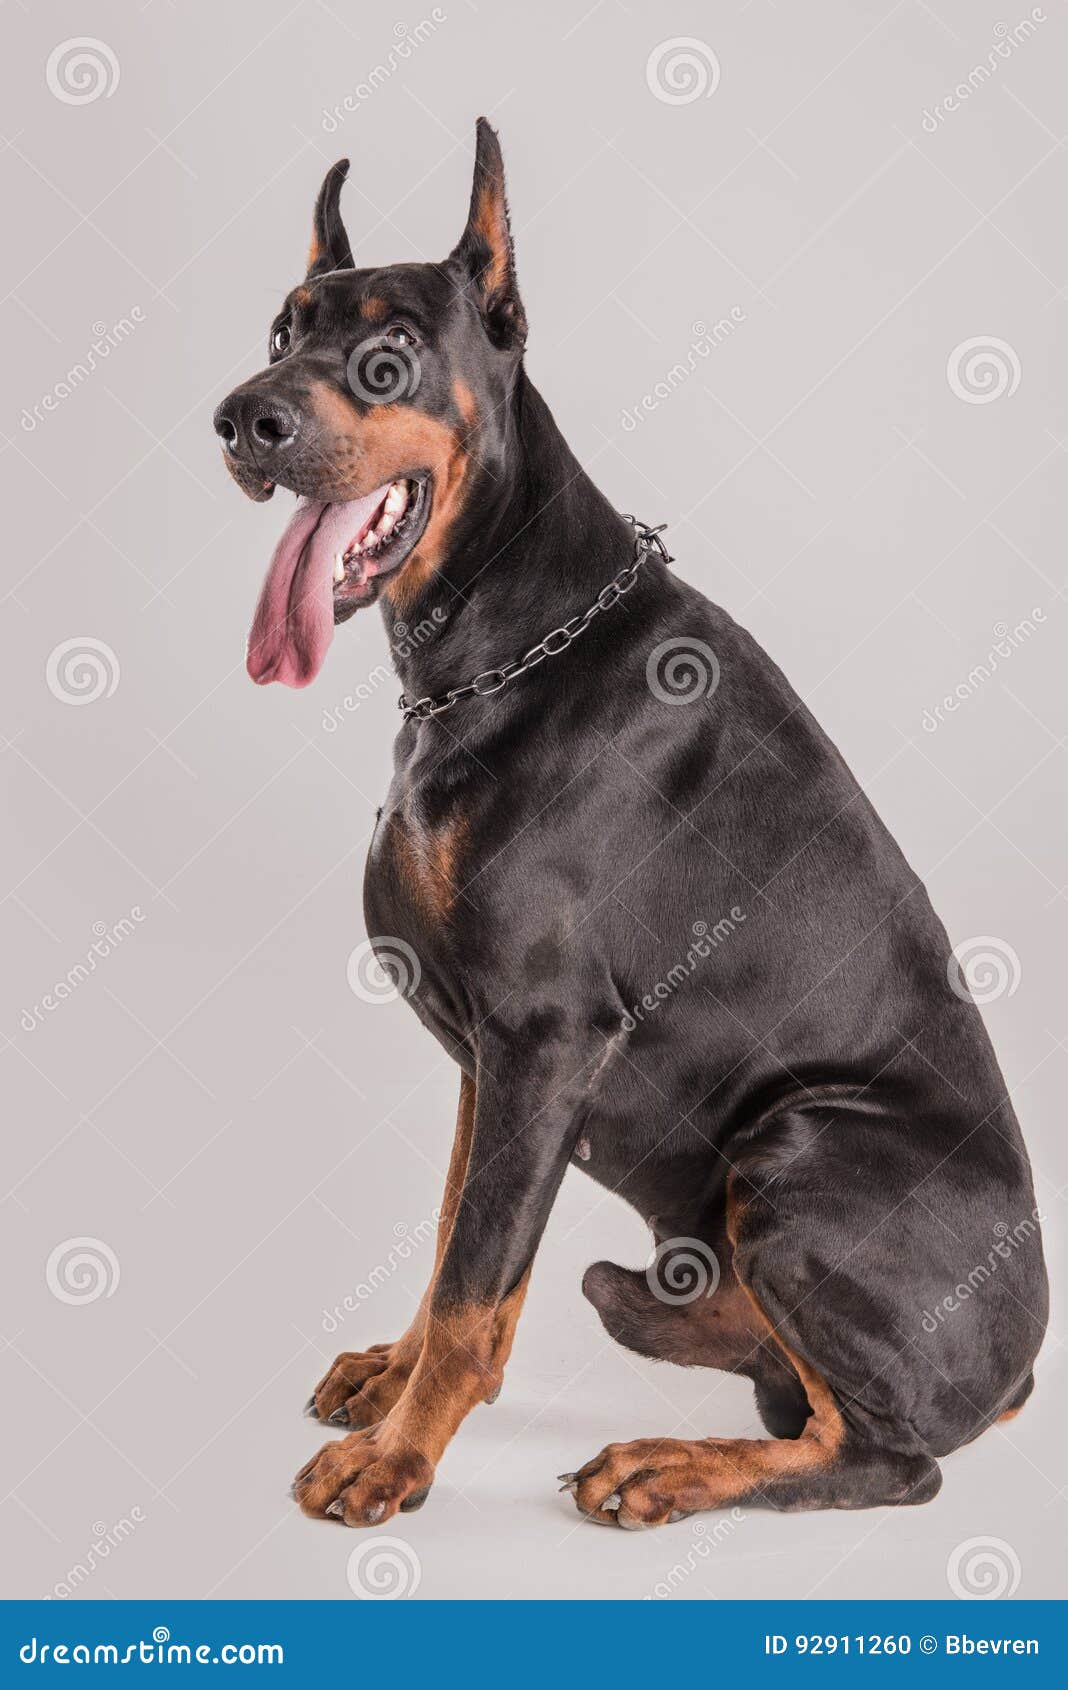 Muscular Champion Doberman Dog Looking at Camera Stock Photo ...